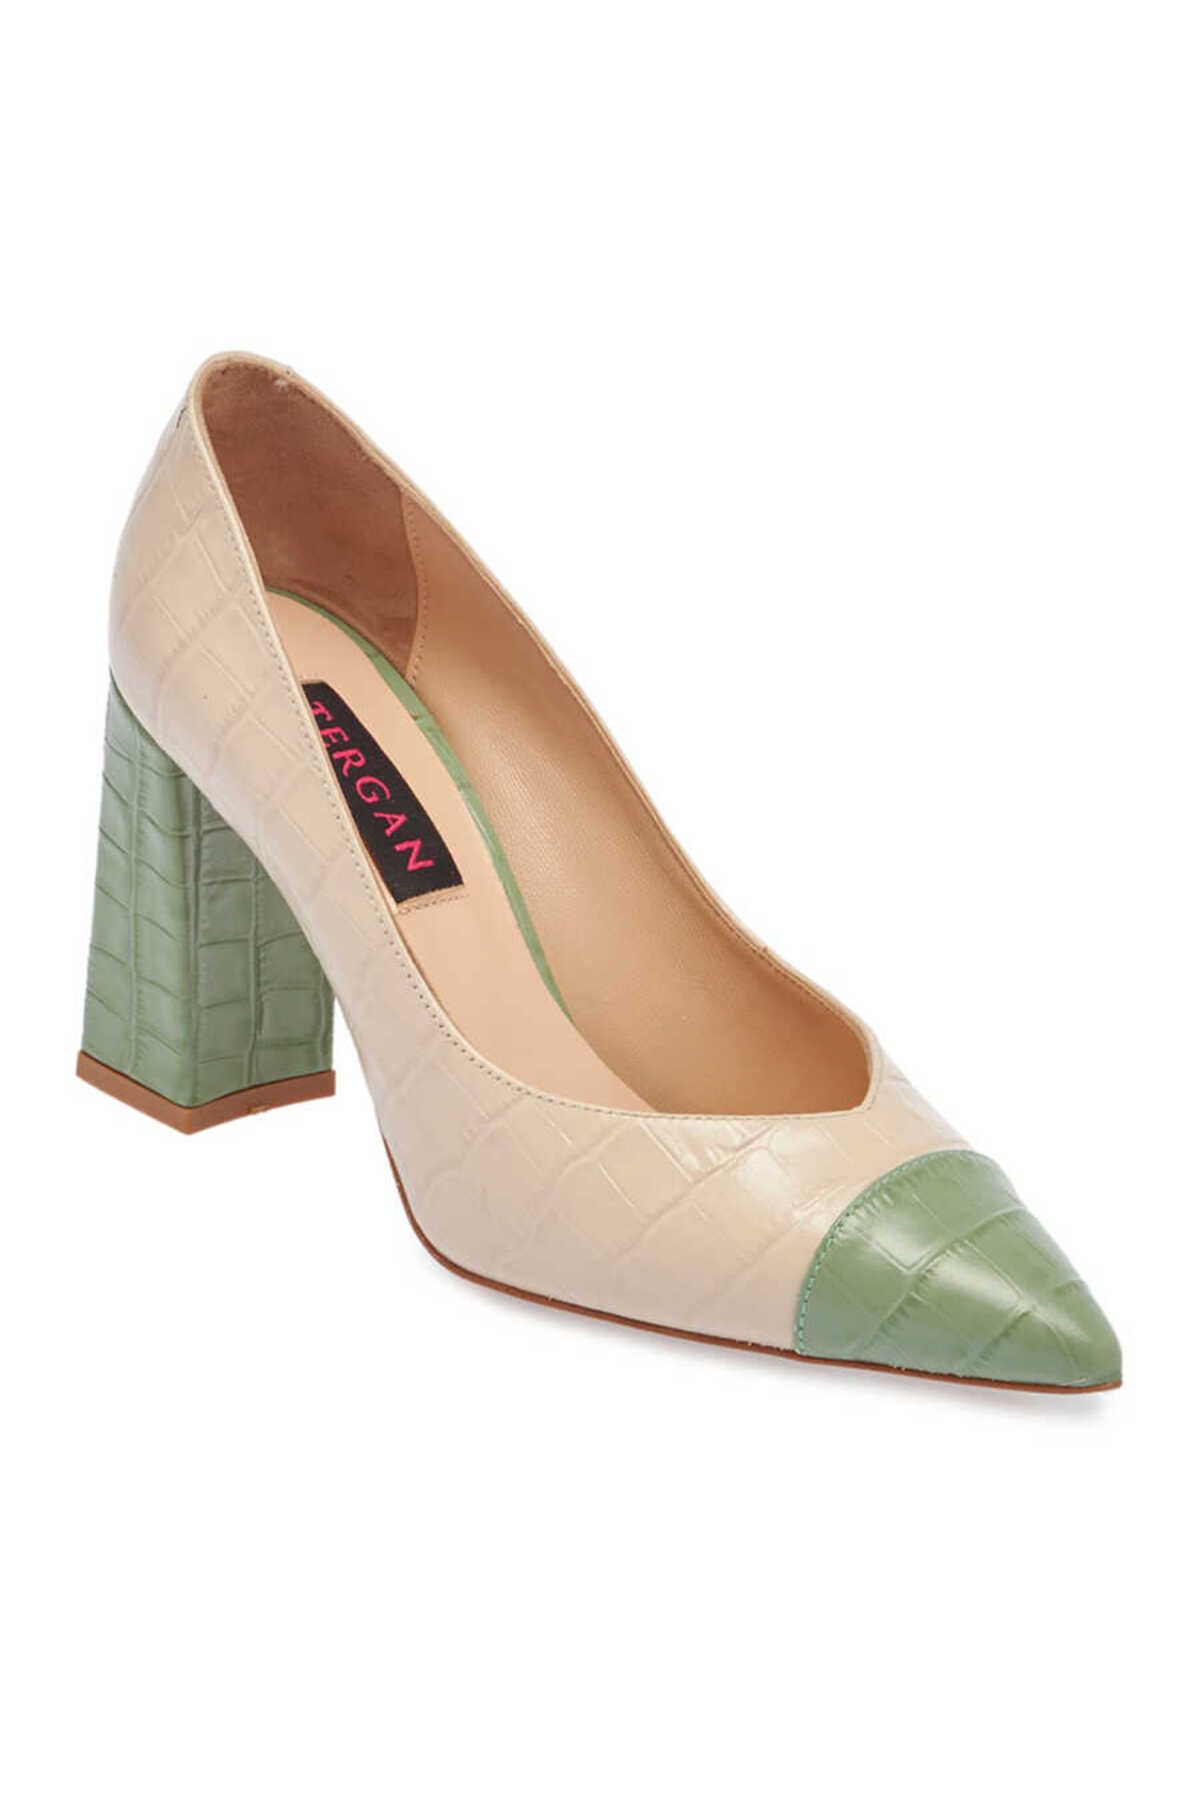 Tergan Yeşil Deri Kadın Topuklu Ayakkabı - K24I1AY67375-K9T